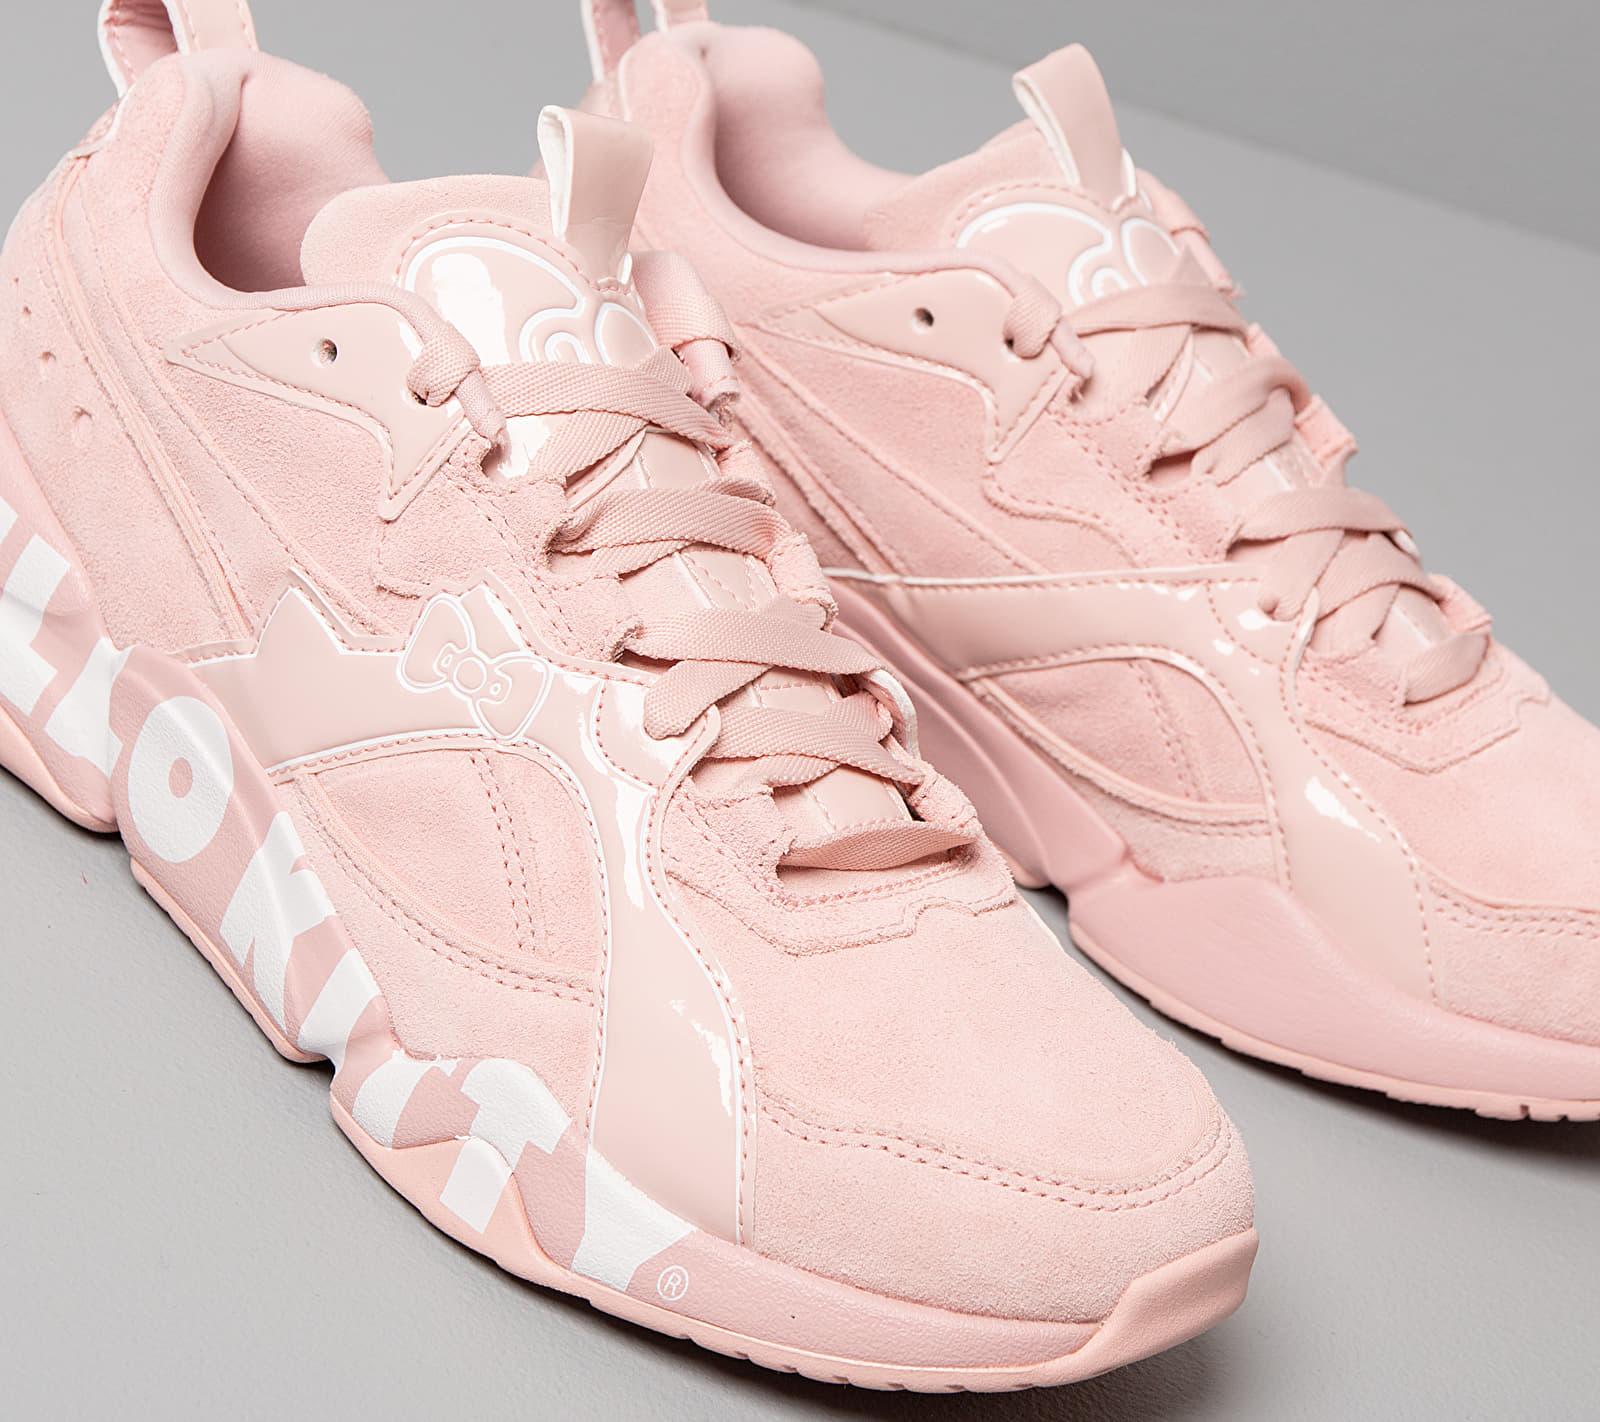 PUMA X Hello Kitty Nova 2 Women's Sneakers in Pink | Lyst